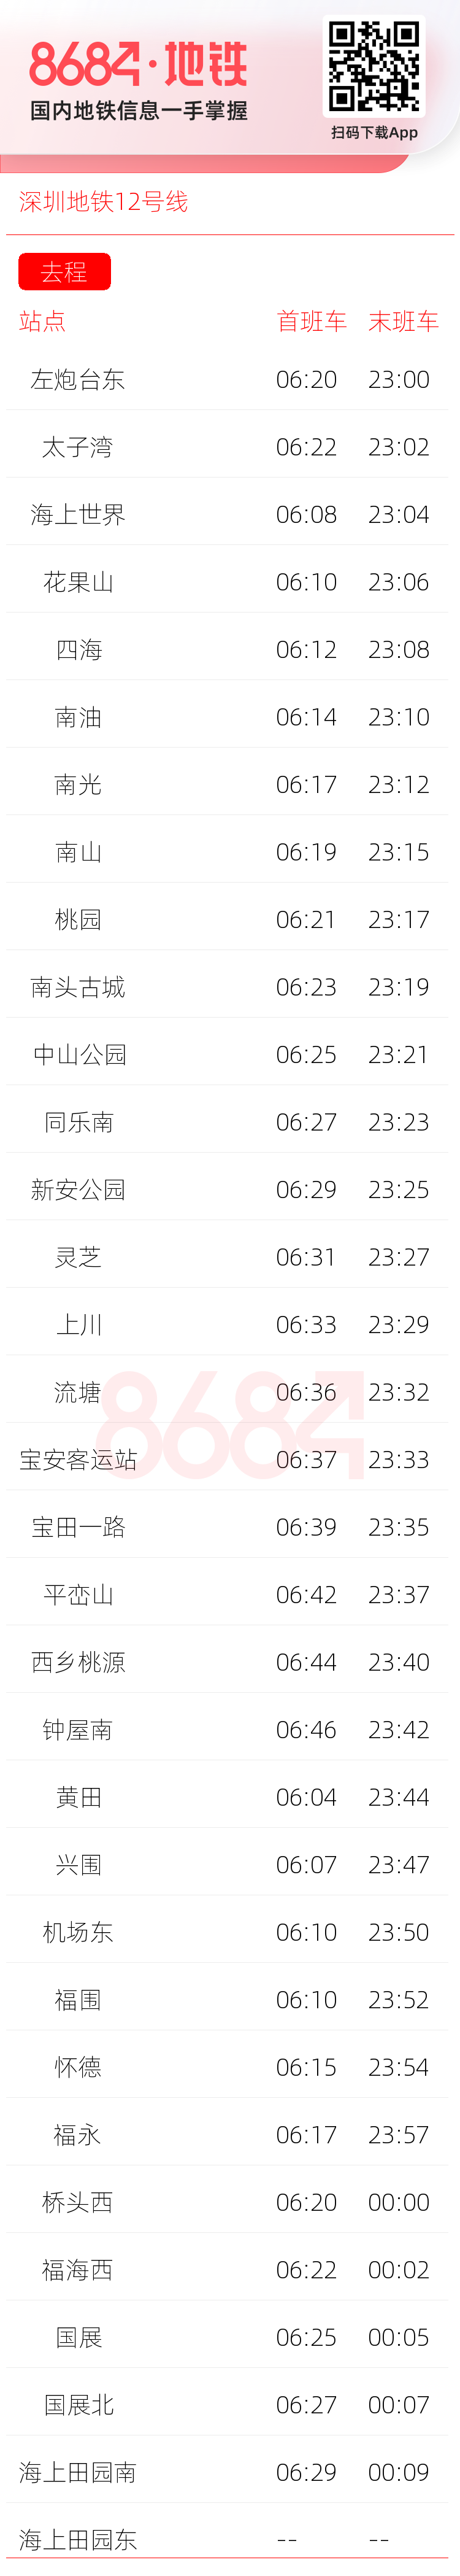 深圳地铁12号线运营时间表